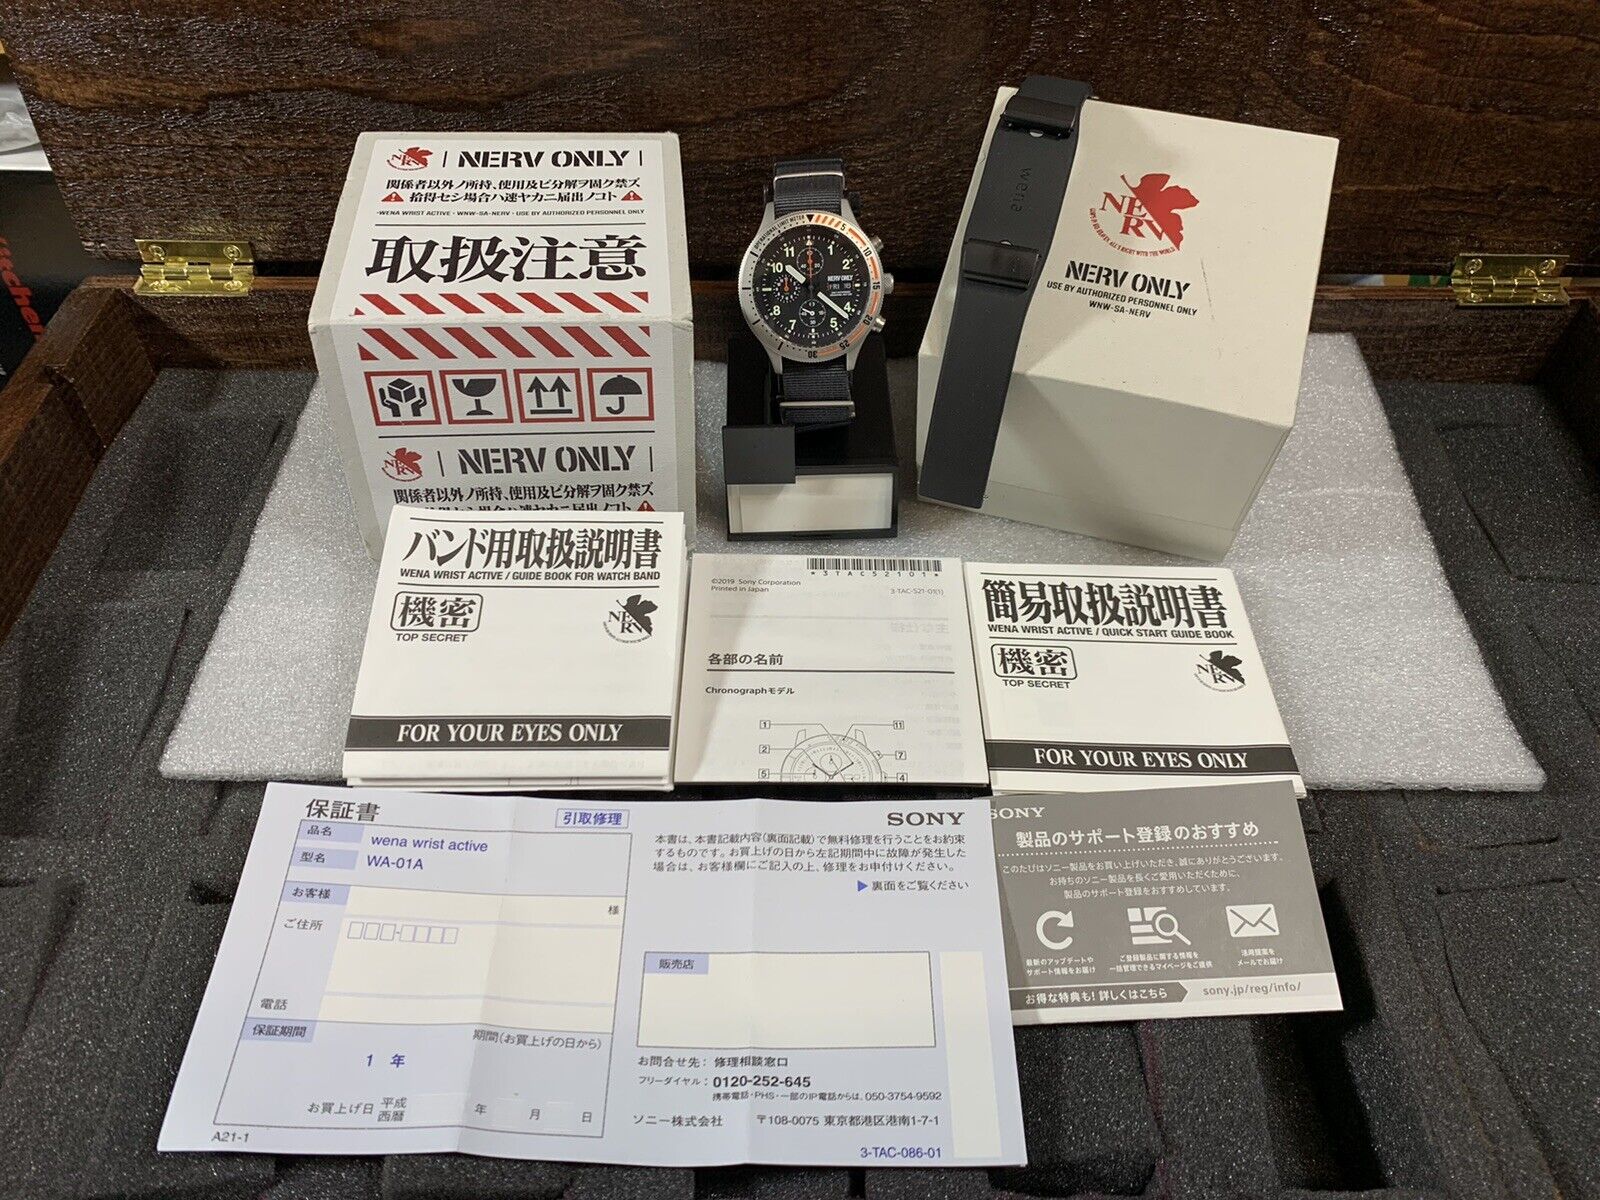 SONY wena wrist active NERV Edition silver Evangelion smartwatch 2019 Limited500